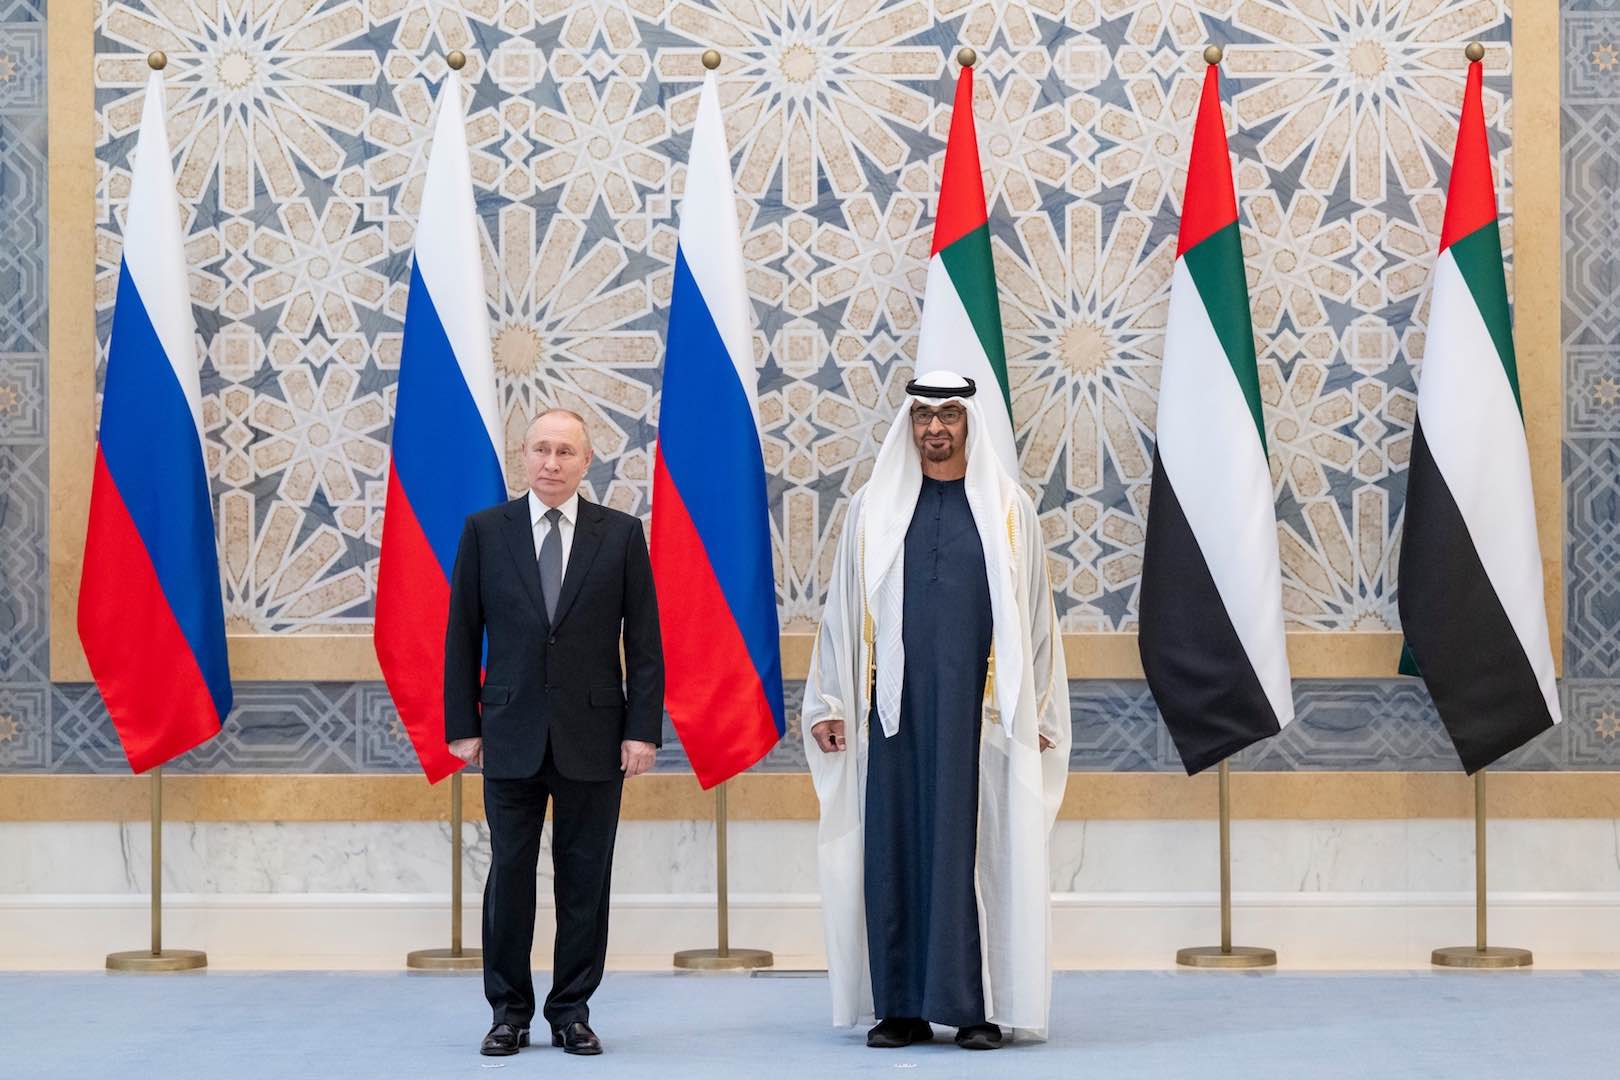 رئيس دولة الإمارات يهنئ هاتفياً إعادة انتخاب فلاديمير بوتين كرئيس لروسيا